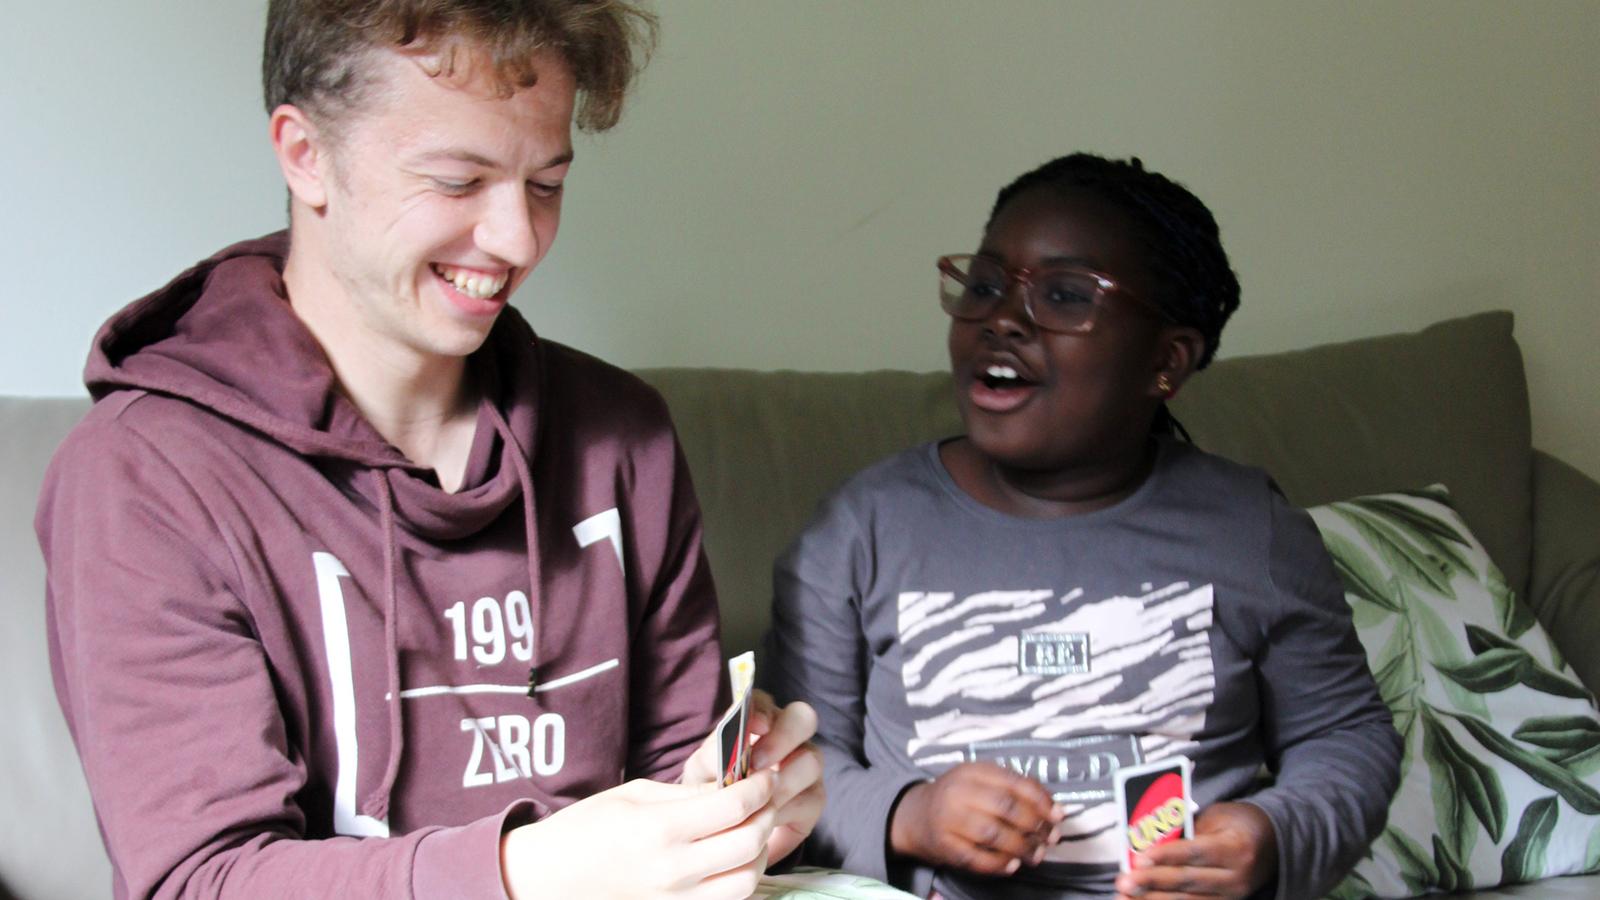 En ung kille och en liten flicka sitter i en soffa och spelar kortspelet UNO - de skrattar och ser glada ut. 